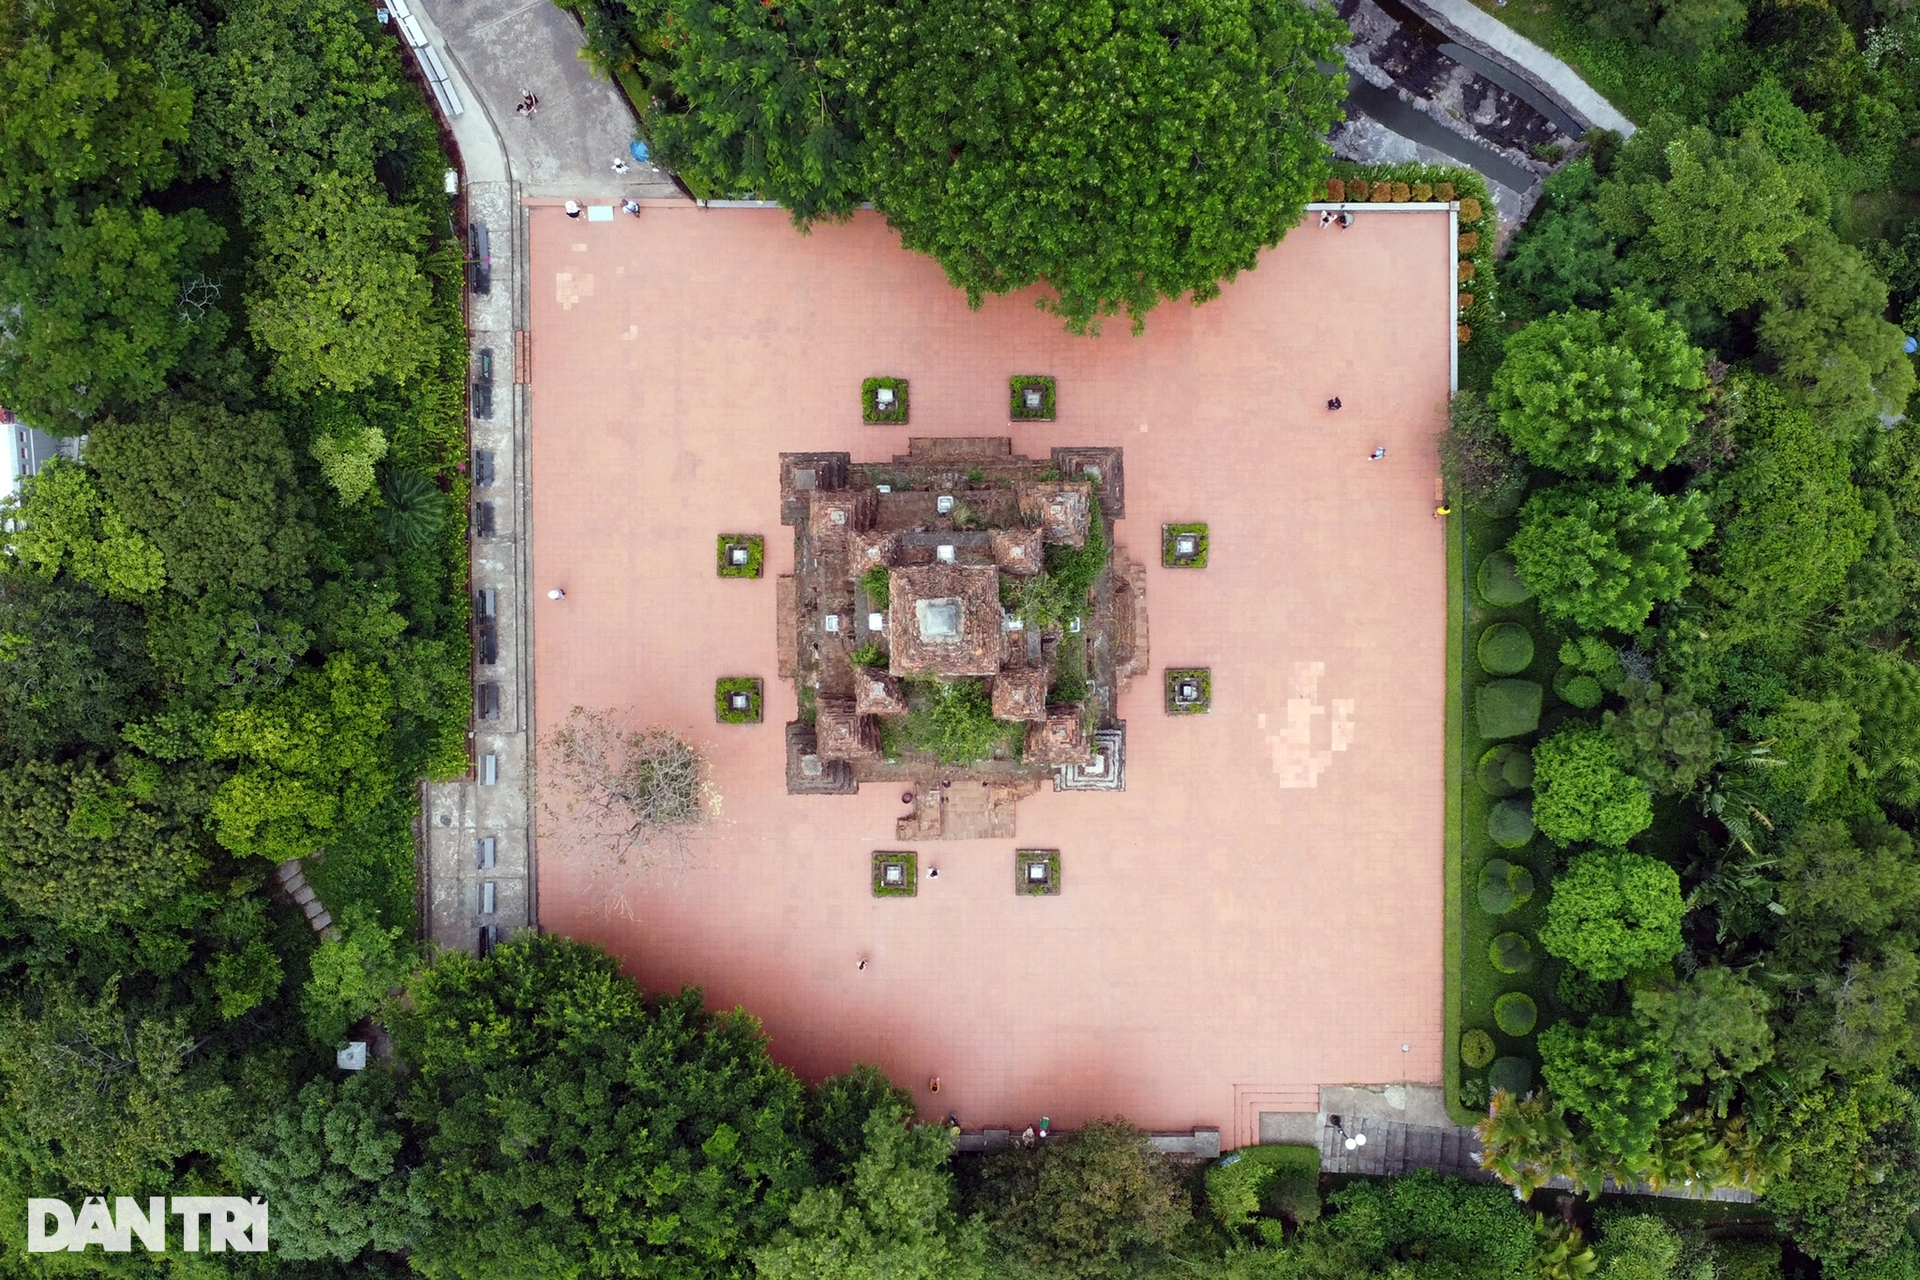 Tháp Nhạn nghìn tuổi ẩn chứa nhiều điều bí ẩn ở Phú Yên